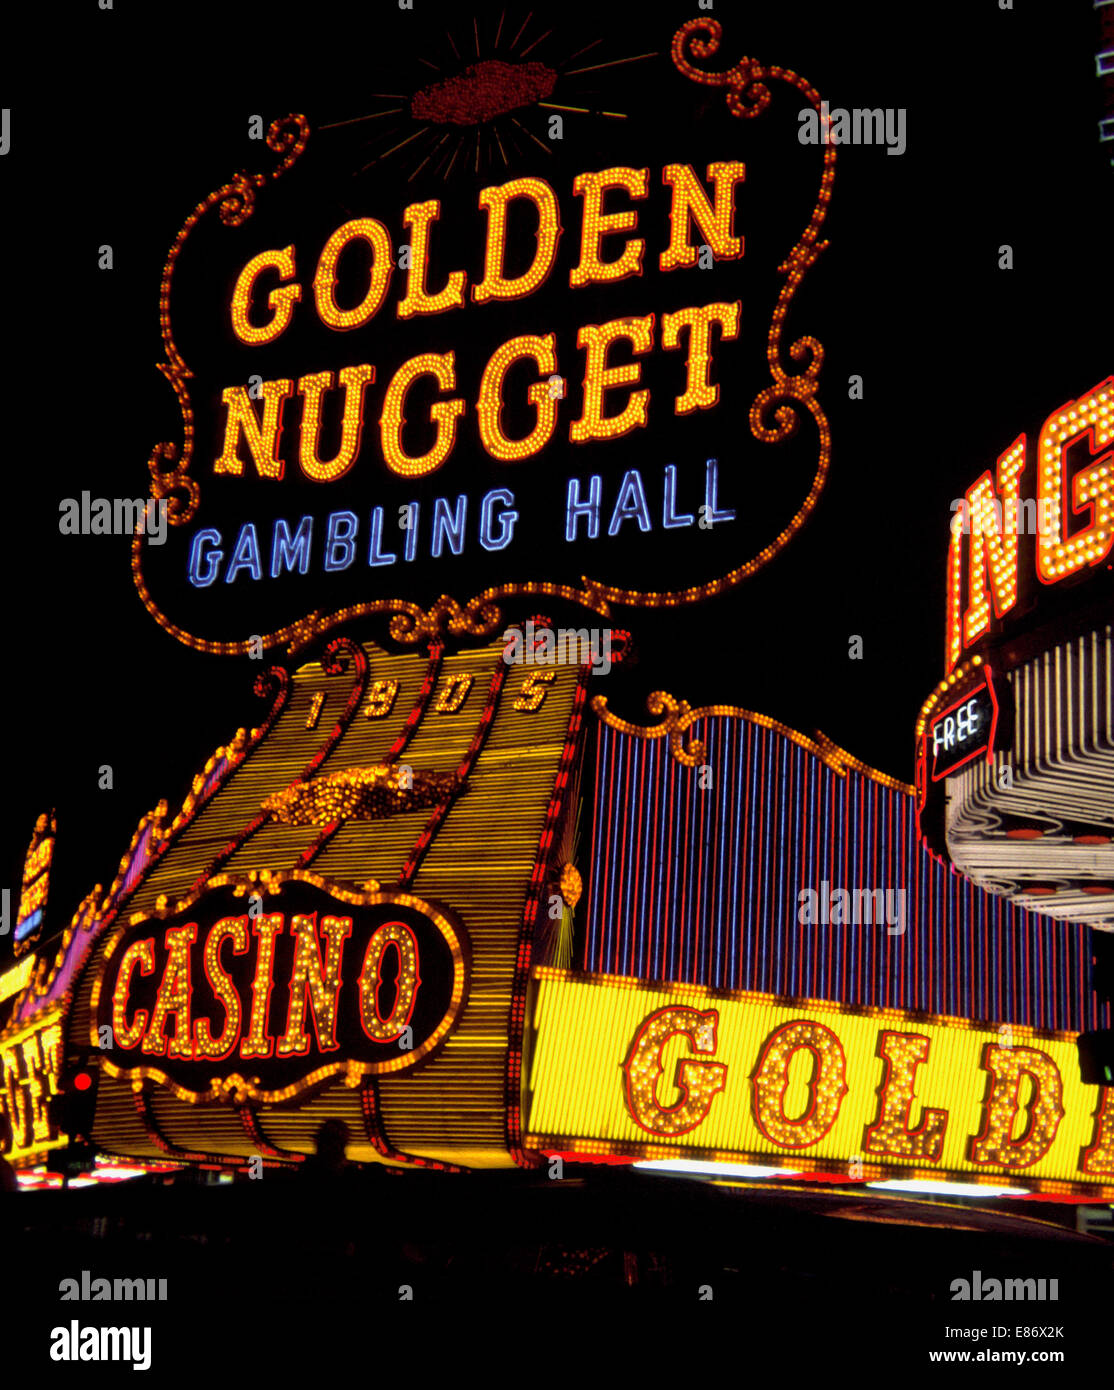 Cet hôtel historique de l'enseigne au néon sur la pépite d'or, l'un des plus anciens casinos de Las Vegas, Nevada, USA, a été remplacé en 1984, lorsque des rénovations importantes ont été faites à la célèbre Fremont Street bien qui a ouvert sa salle de jeu original en 1946. Aujourd'hui, c'est le plus grand casino and resort dans le centre-ville de Las Vegas et compte plus de 2 400 chambres. Photographié dans la nuit en 1968. Banque D'Images